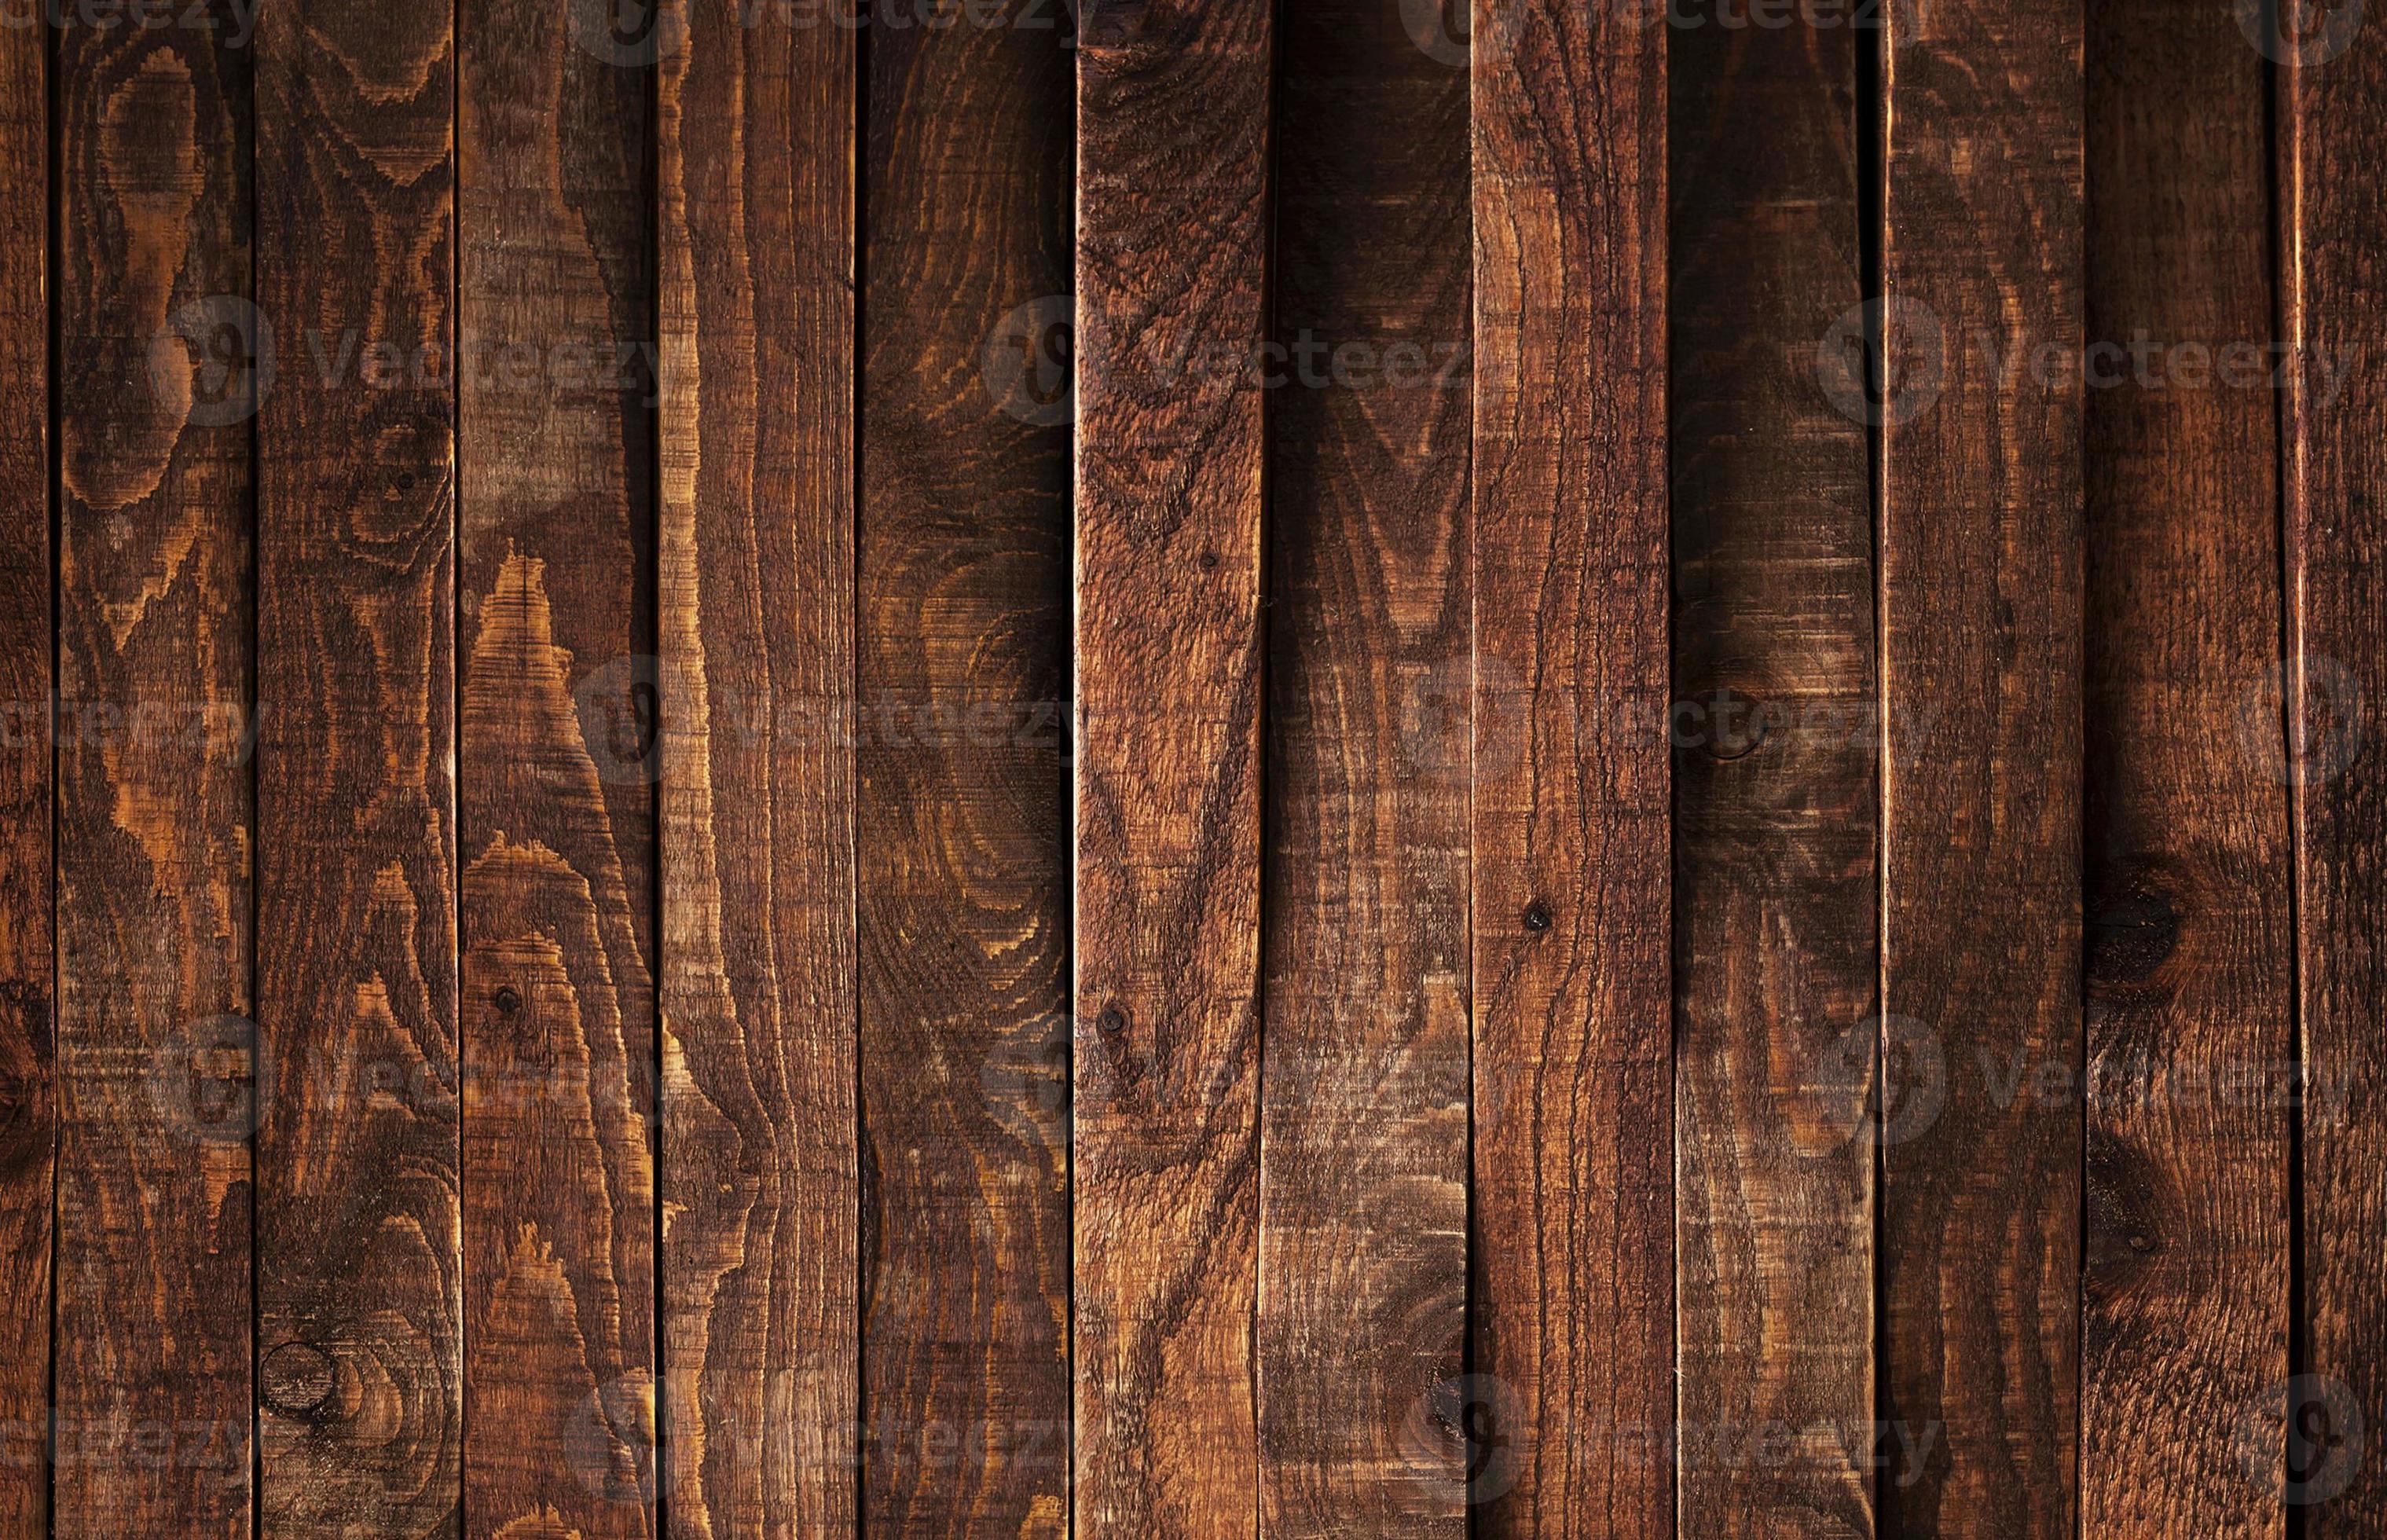 Bạn đang muốn tìm kiếm một background gỗ cổ điển cho không gian quán cafe của bạn? Chúng tôi có mảnh vỡ gỗ nâu cổ điển và tường gỗ cũ để tô điểm cho không gian của bạn. Tạo ra một phong cách cổ điển cho căn phòng của bạn với background gỗ này! Hãy nhấn vào ảnh để xem thêm mẫu mã.